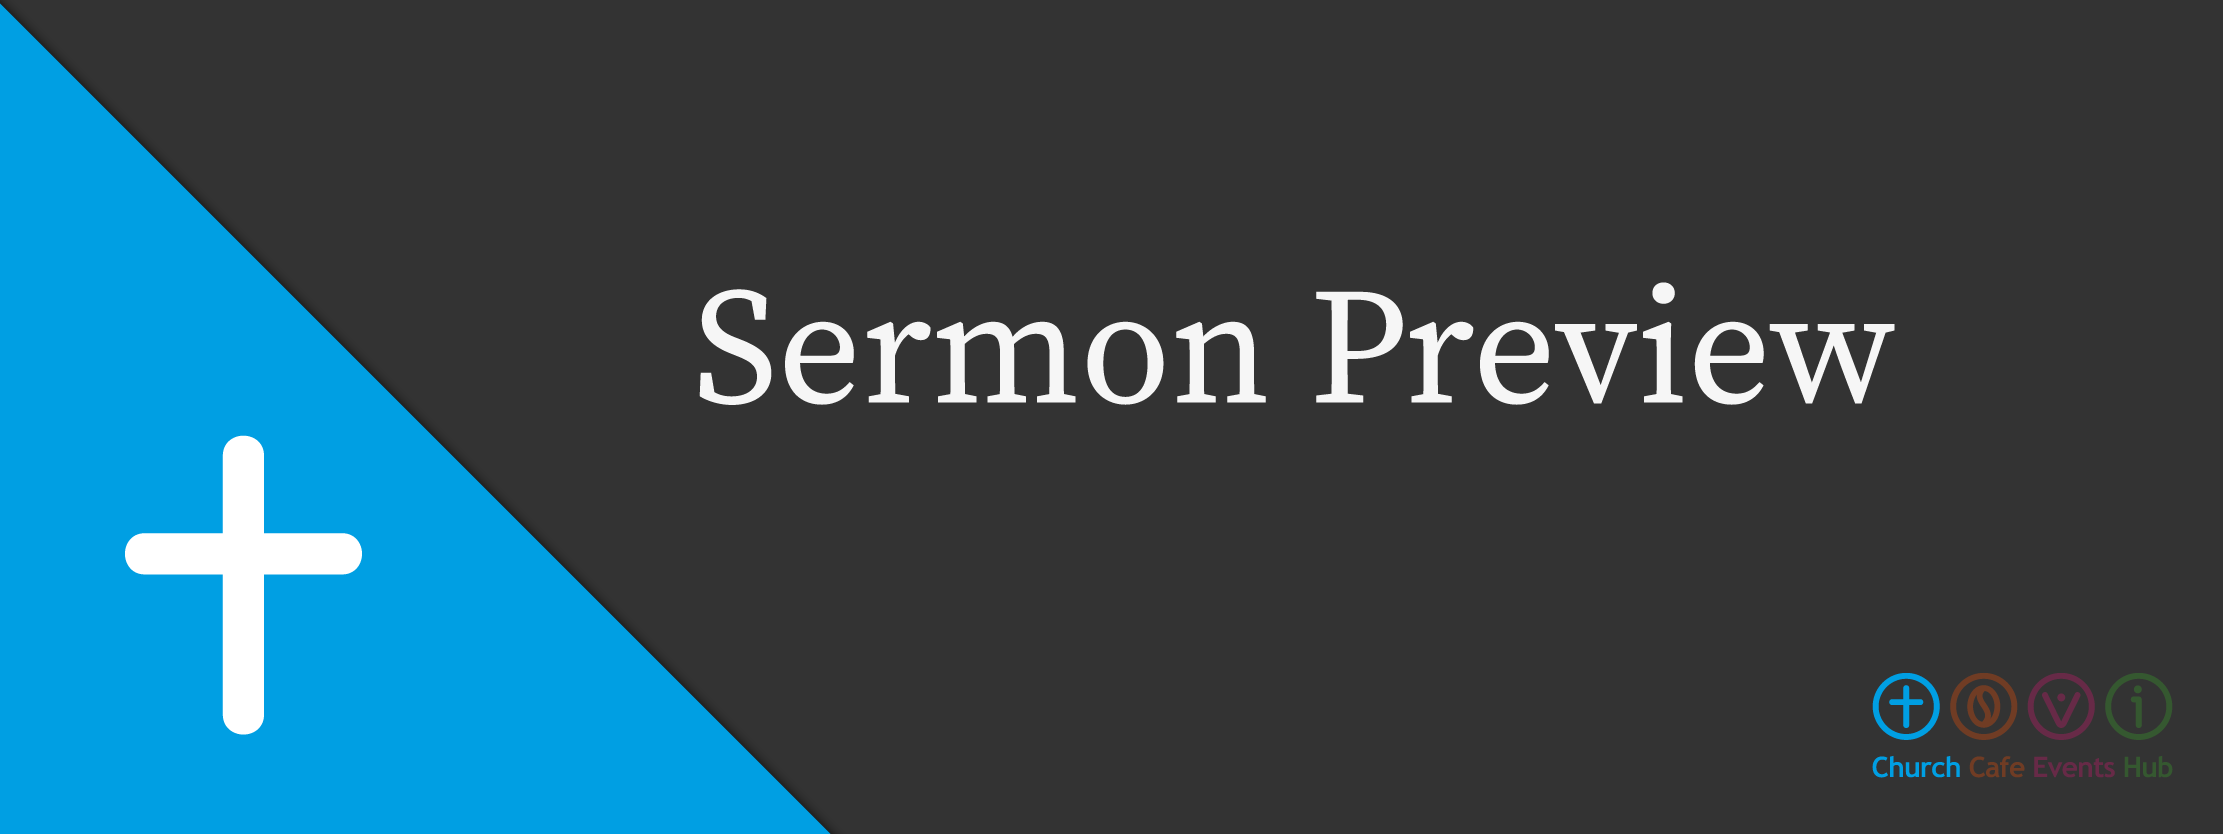 Sermon Preview